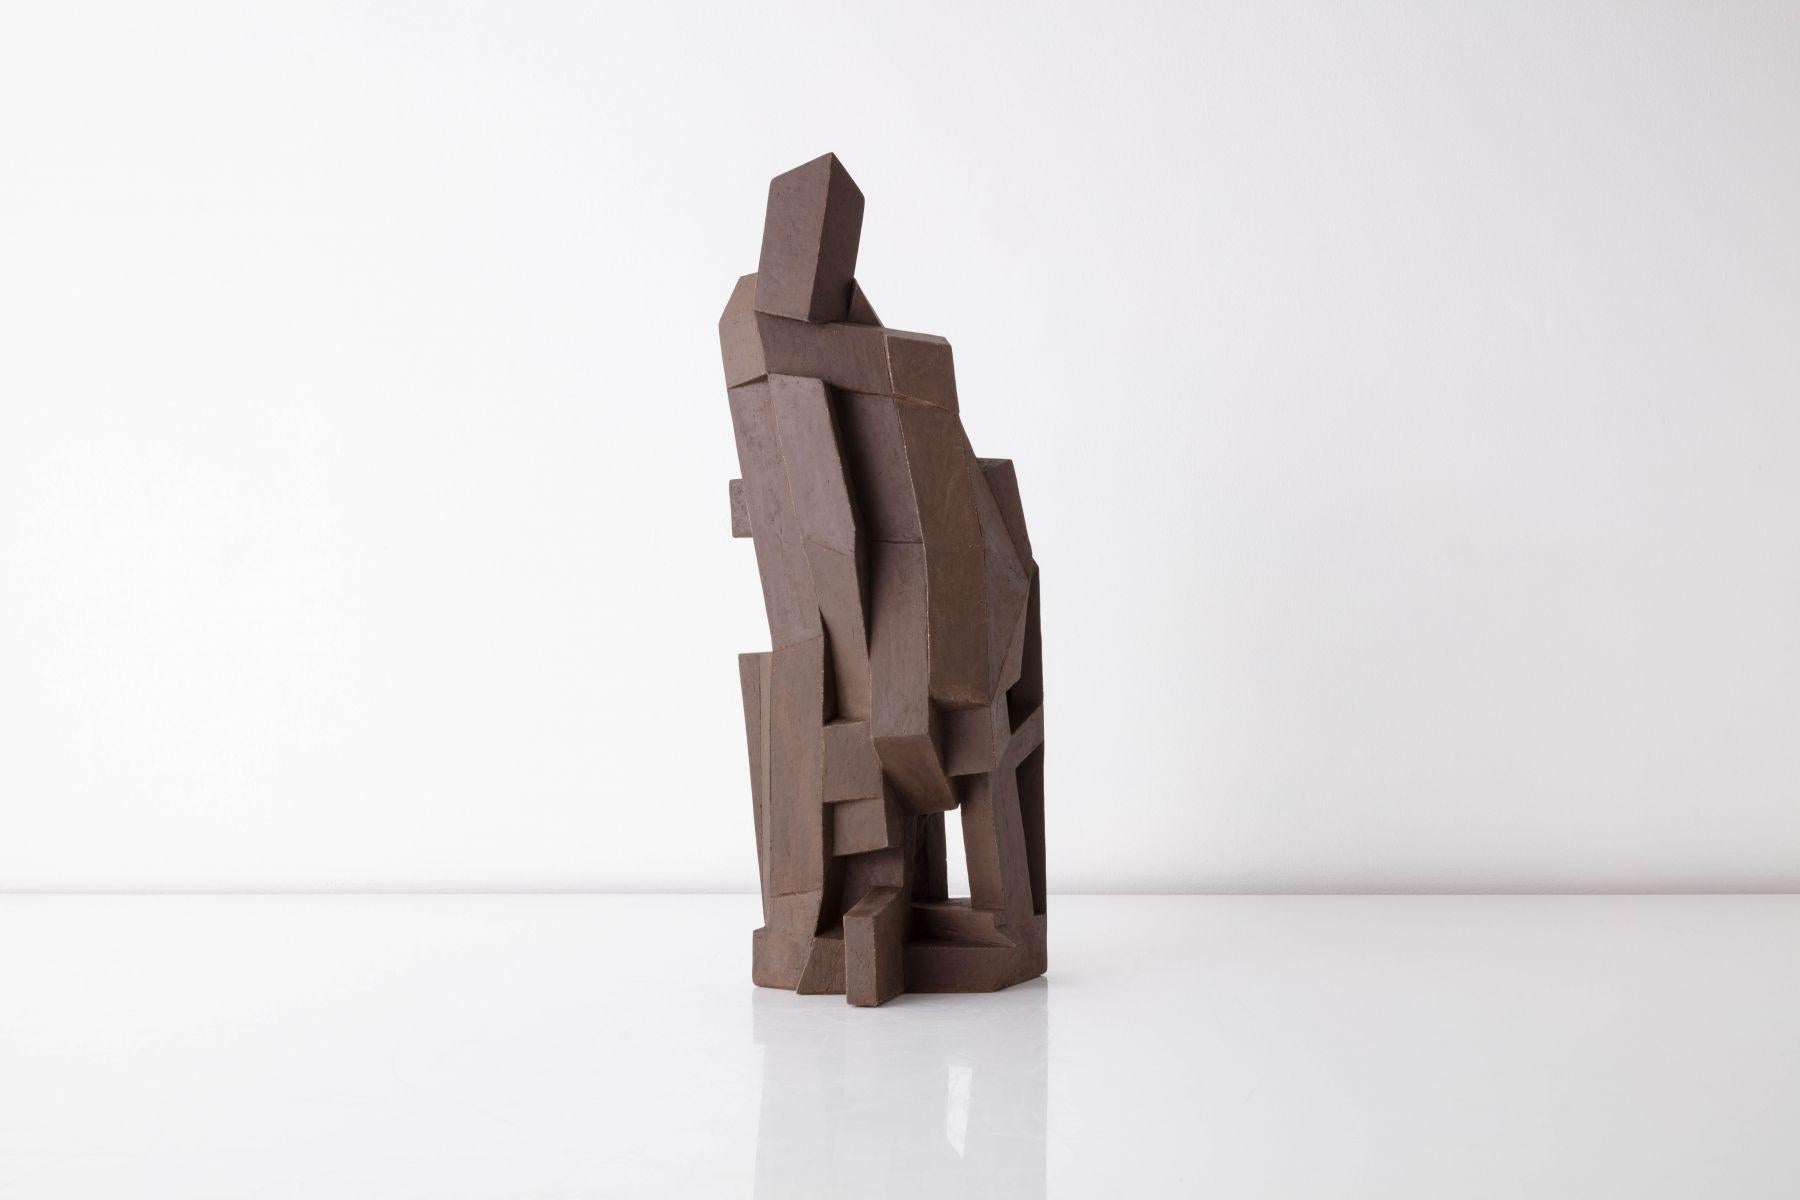 Spatial Collage I - Sculpture by Karen Bennicke